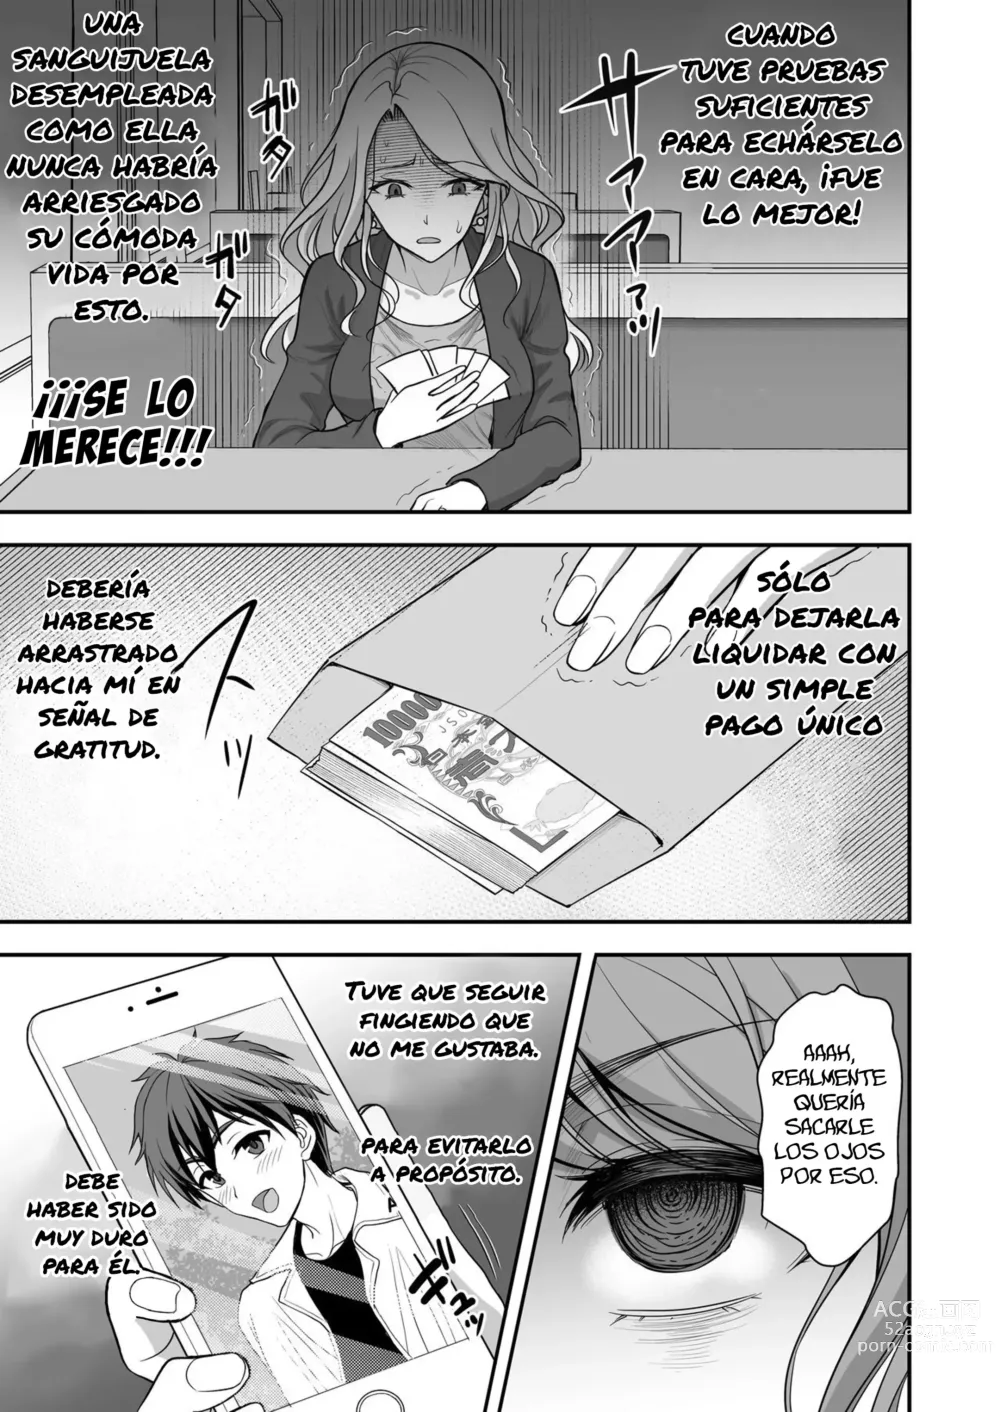 Page 49 of doujinshi La leve trampa de una esposa ~La engañé pero estoy totalmente bajo su control~